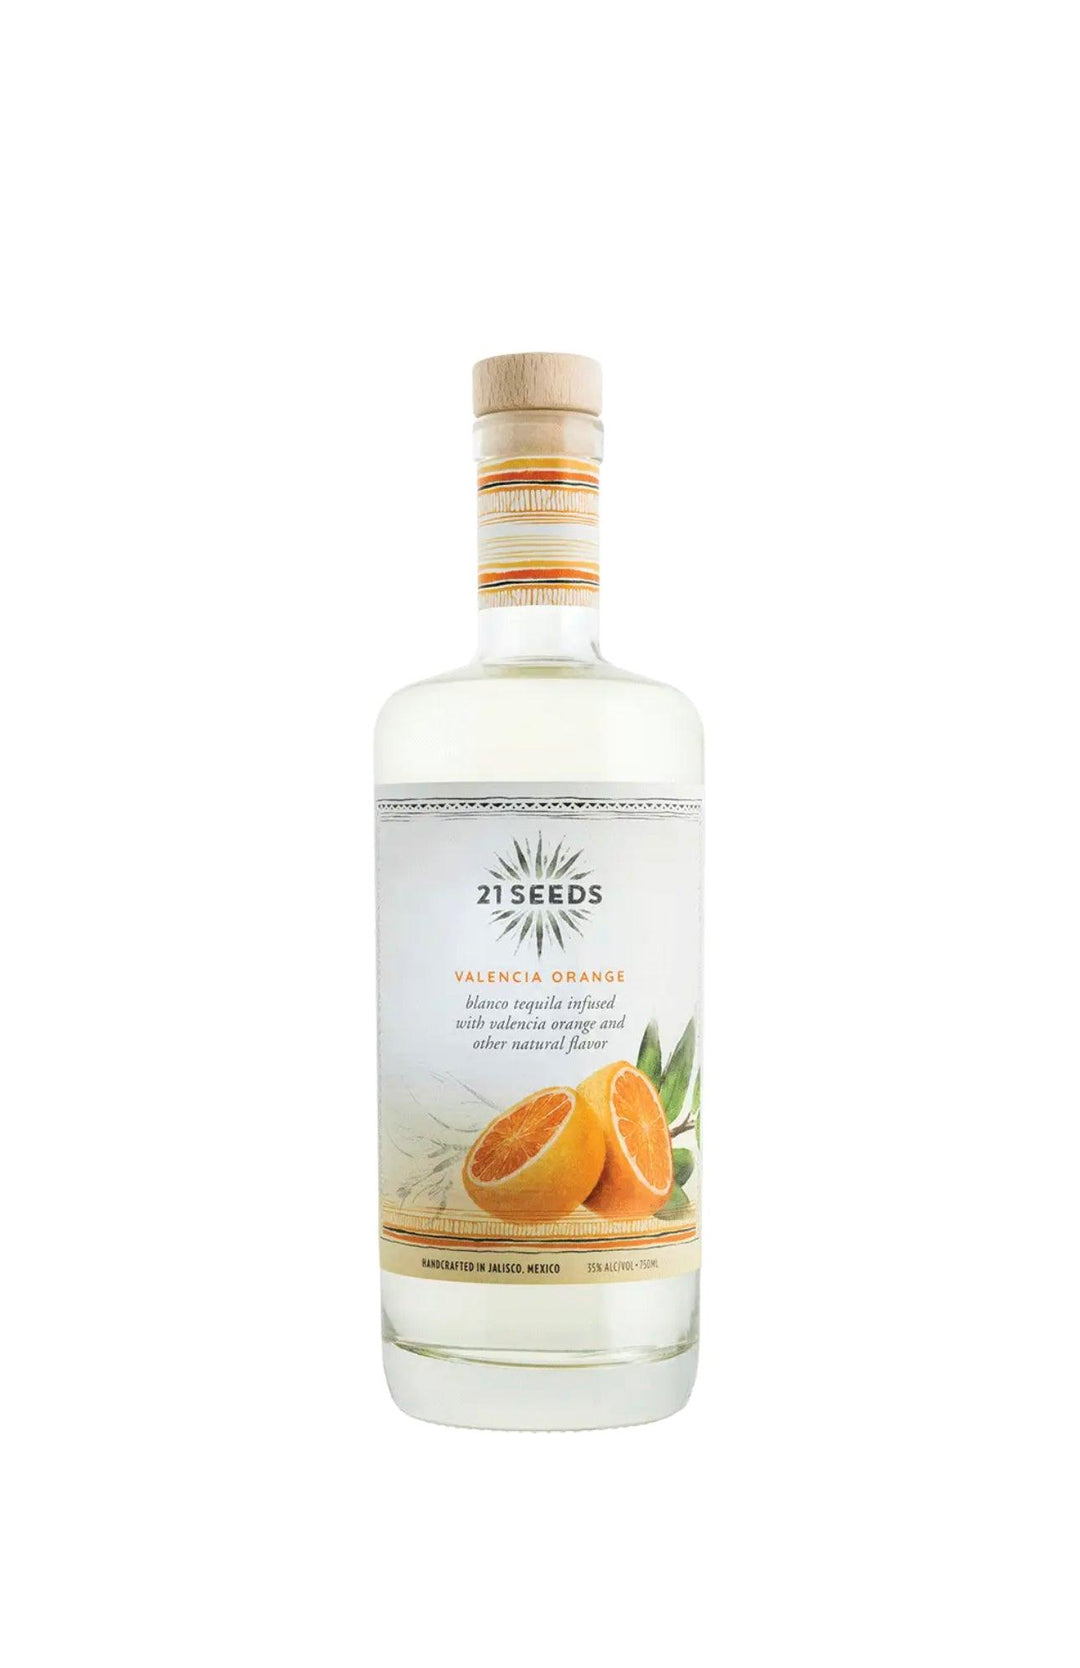 21 Seeds Valencia Orange Tequila - Liquor Luxe